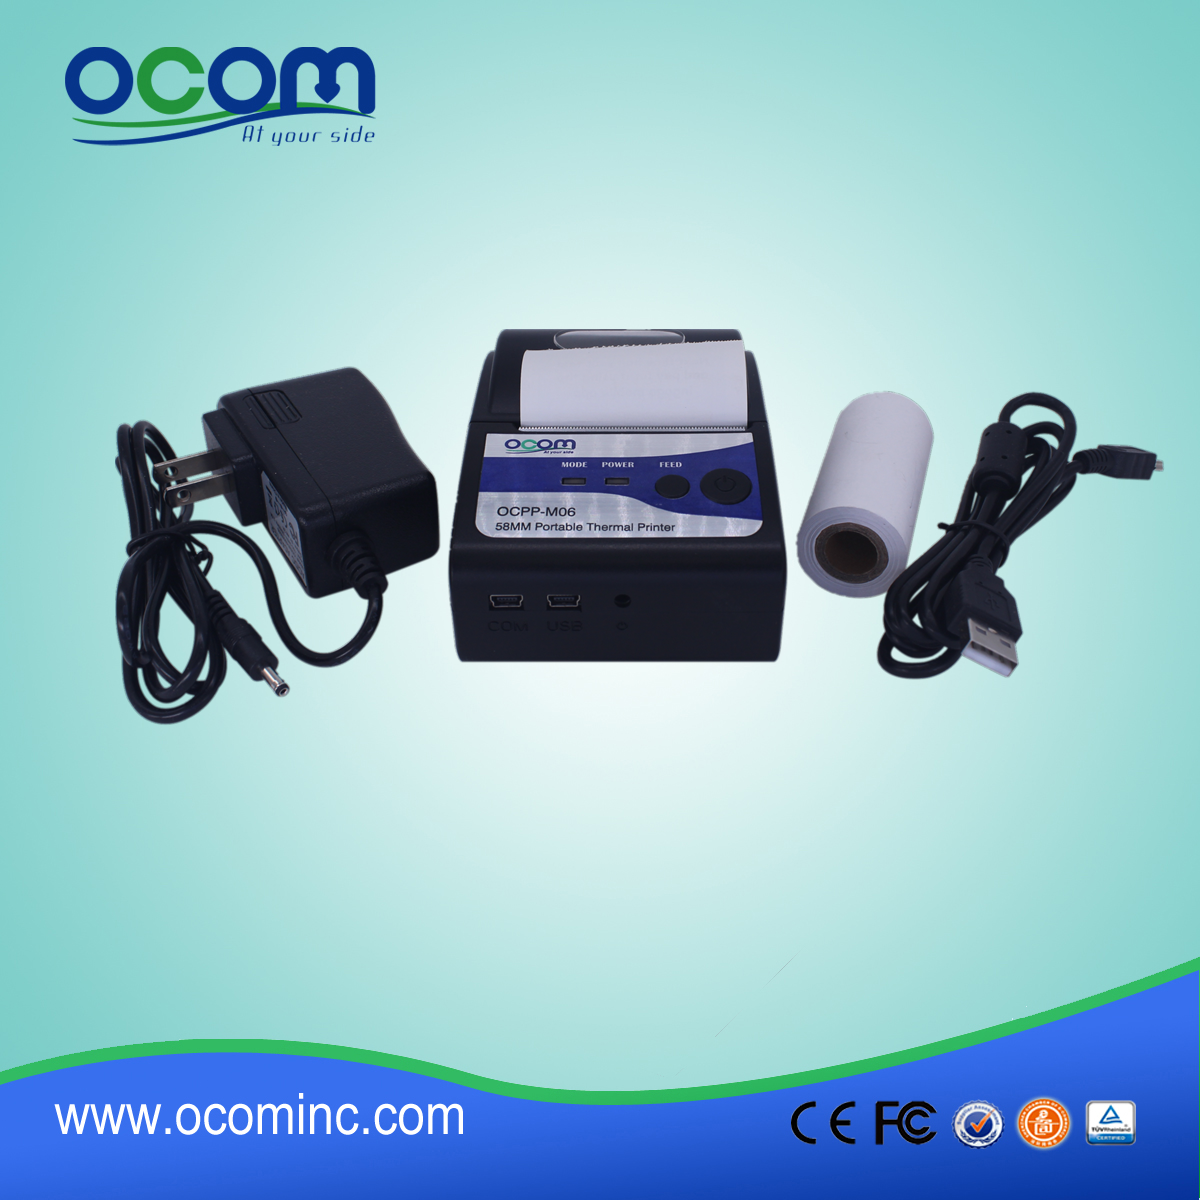 (OCPP-M06) OCOM 2015 caliente venta de impresora portátil android bluetooth